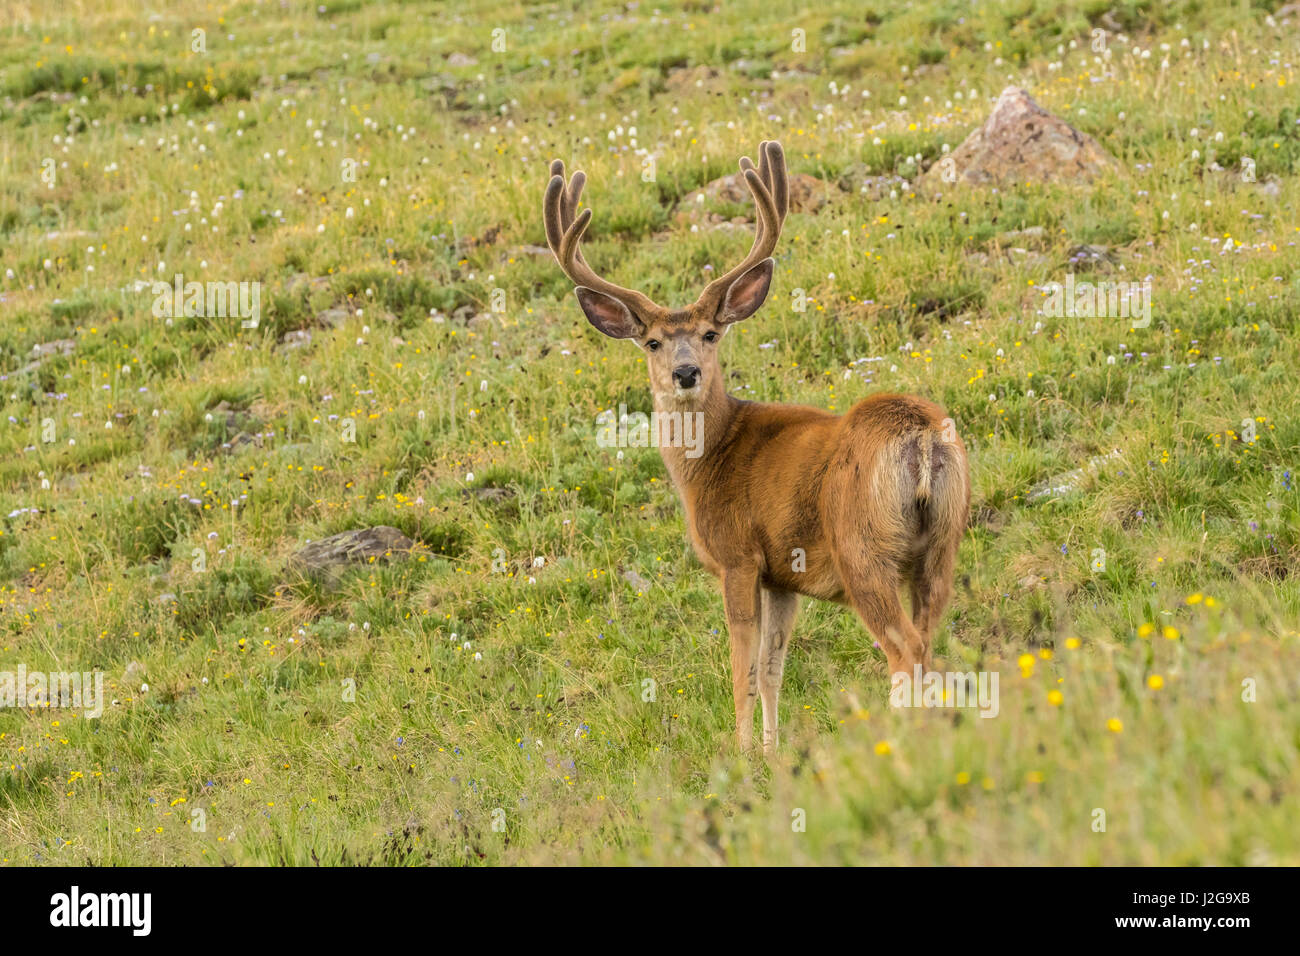 Stati Uniti d'America, Colorado, Rocky Mountain National Park. Mule Deer buck con corna di velluto. Credito come: Cathy e Gordon Illg Jaynes / Galleria / DanitaDelimont.com Foto Stock